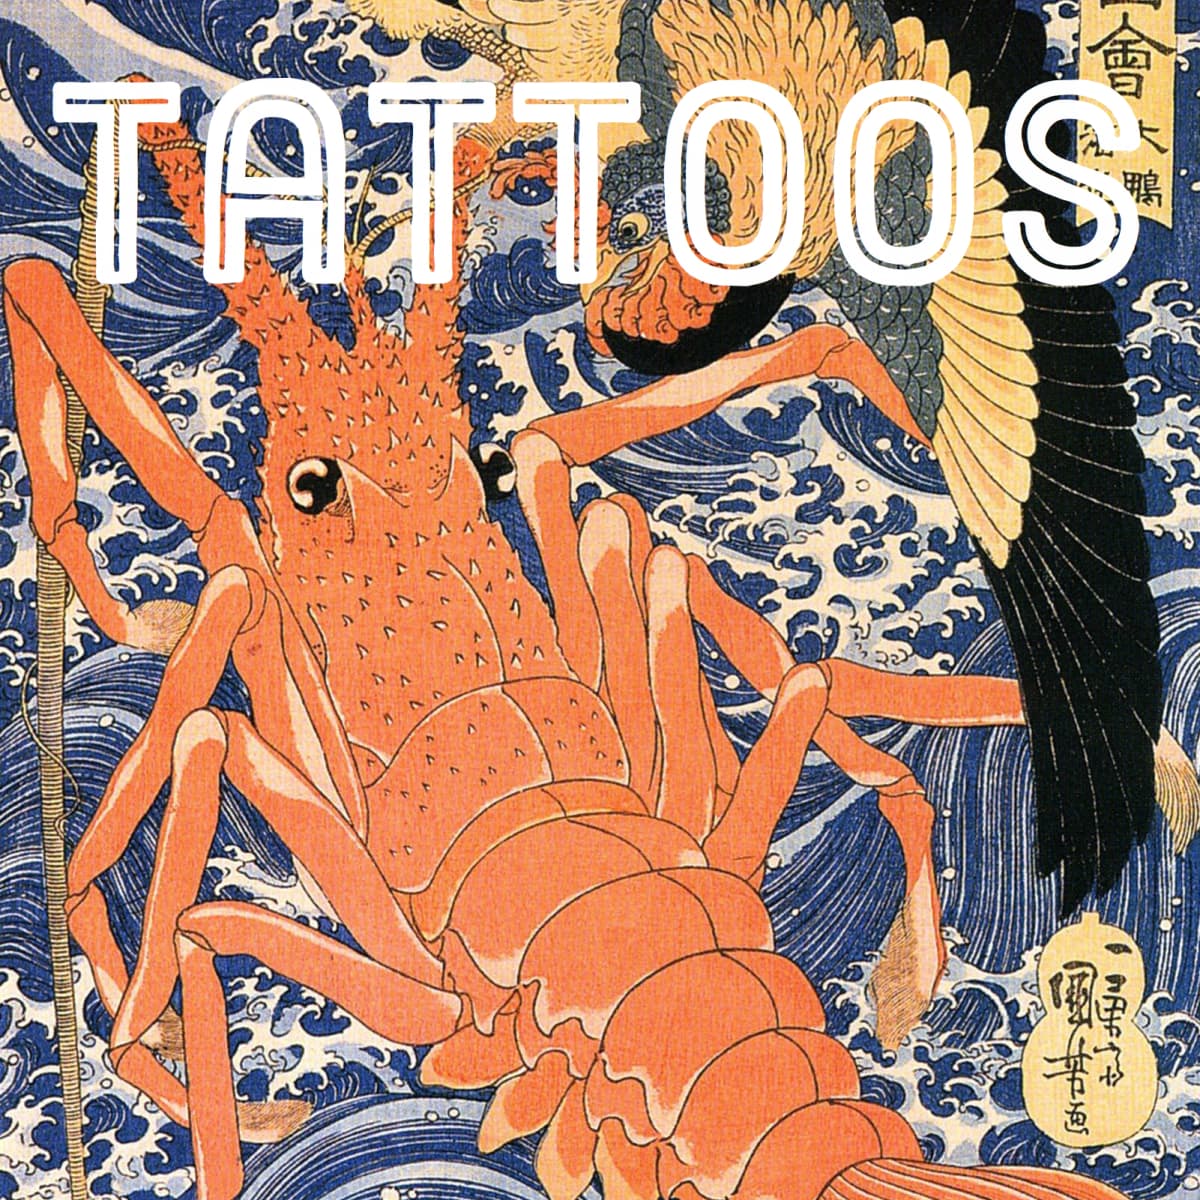 43 Unique Lobster Tattoo Ideas  Tattoo Glee